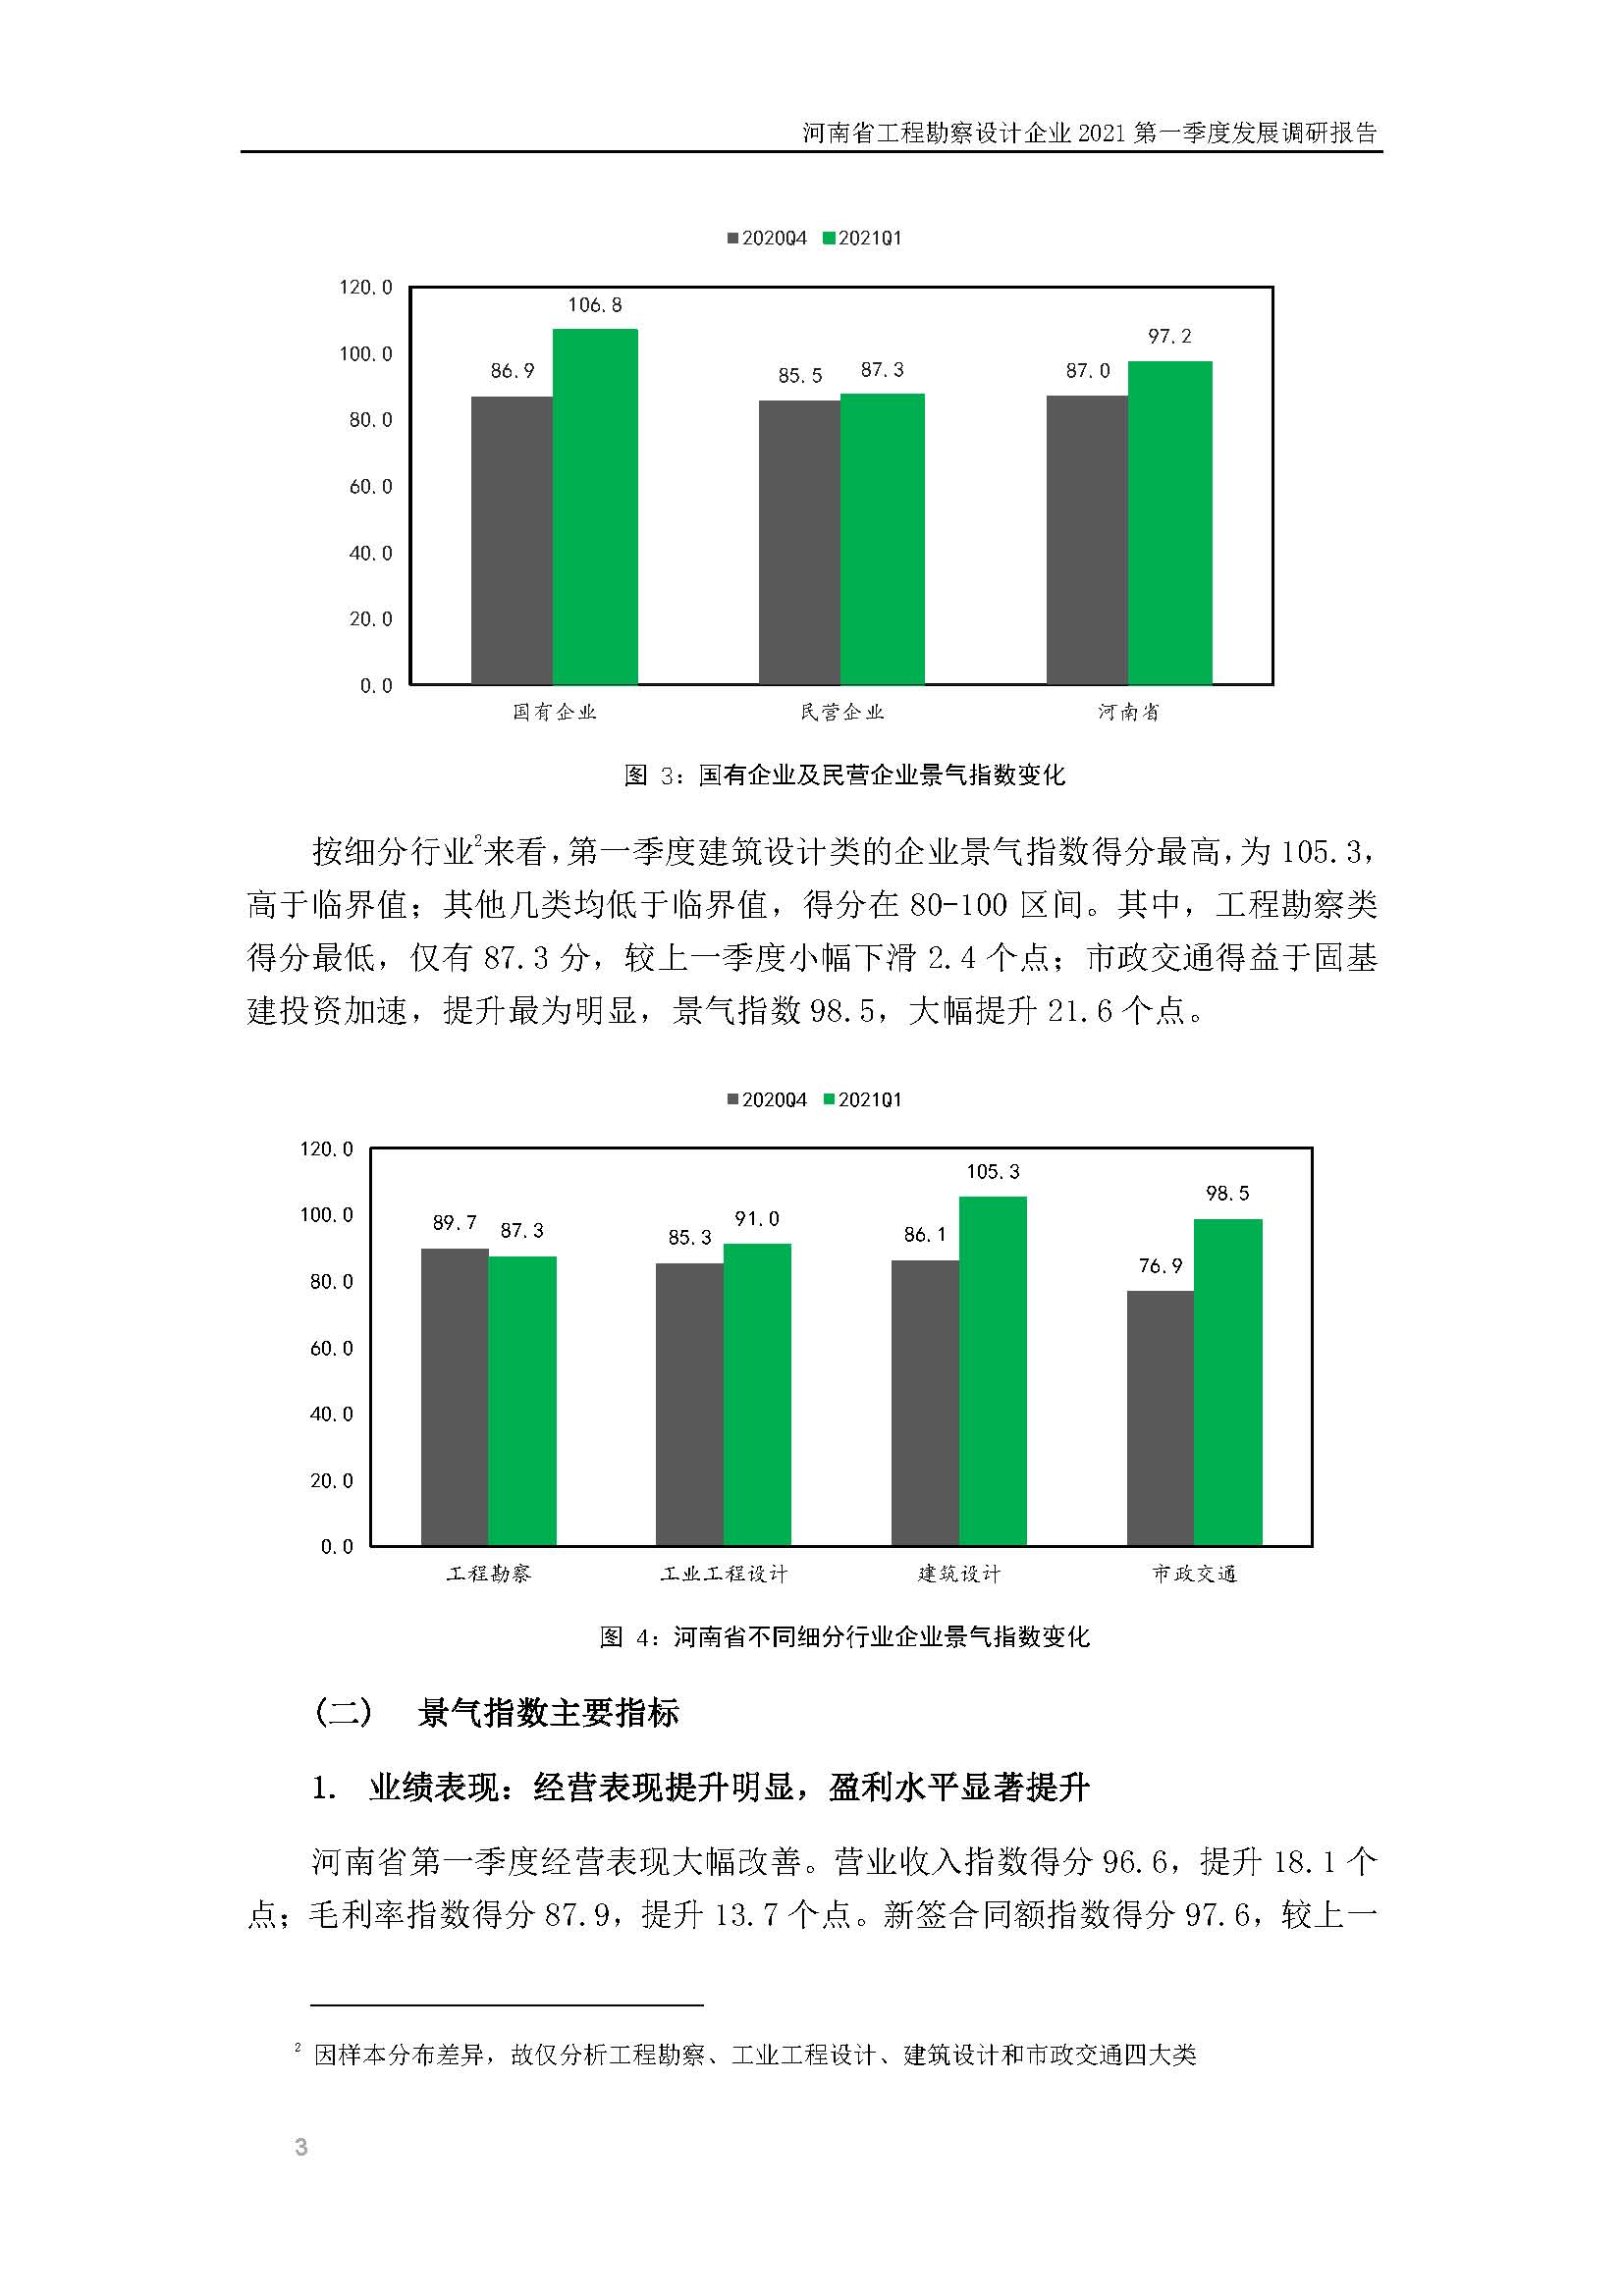 河南省工程勘察设计企业2021第一季度发展调研报告（一）_页面_4.jpg